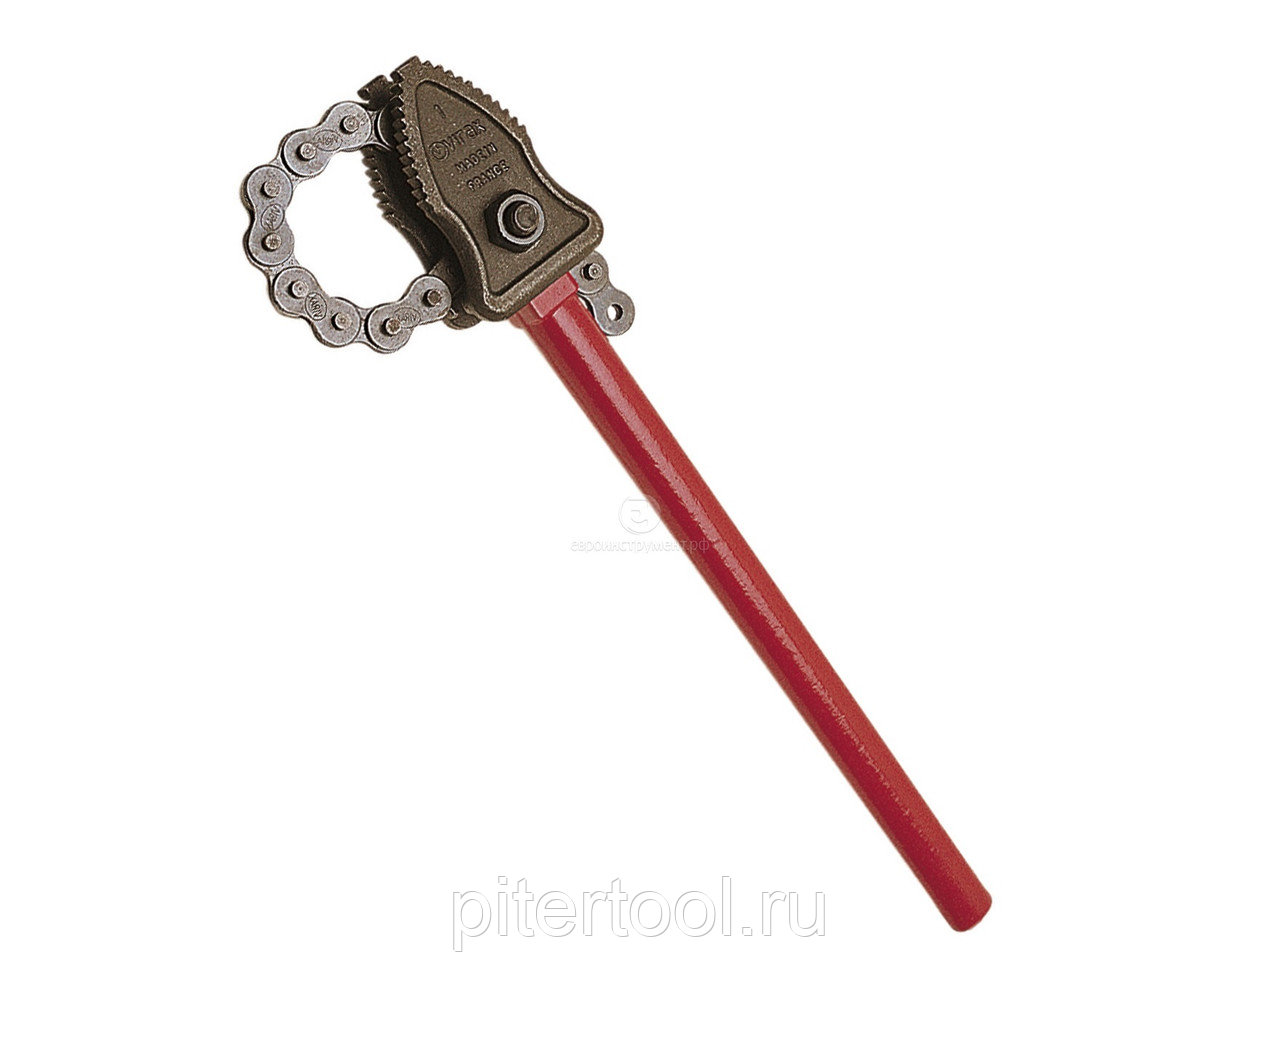 Изготовить трубный цепной ключ своими руками. универсальный ключ